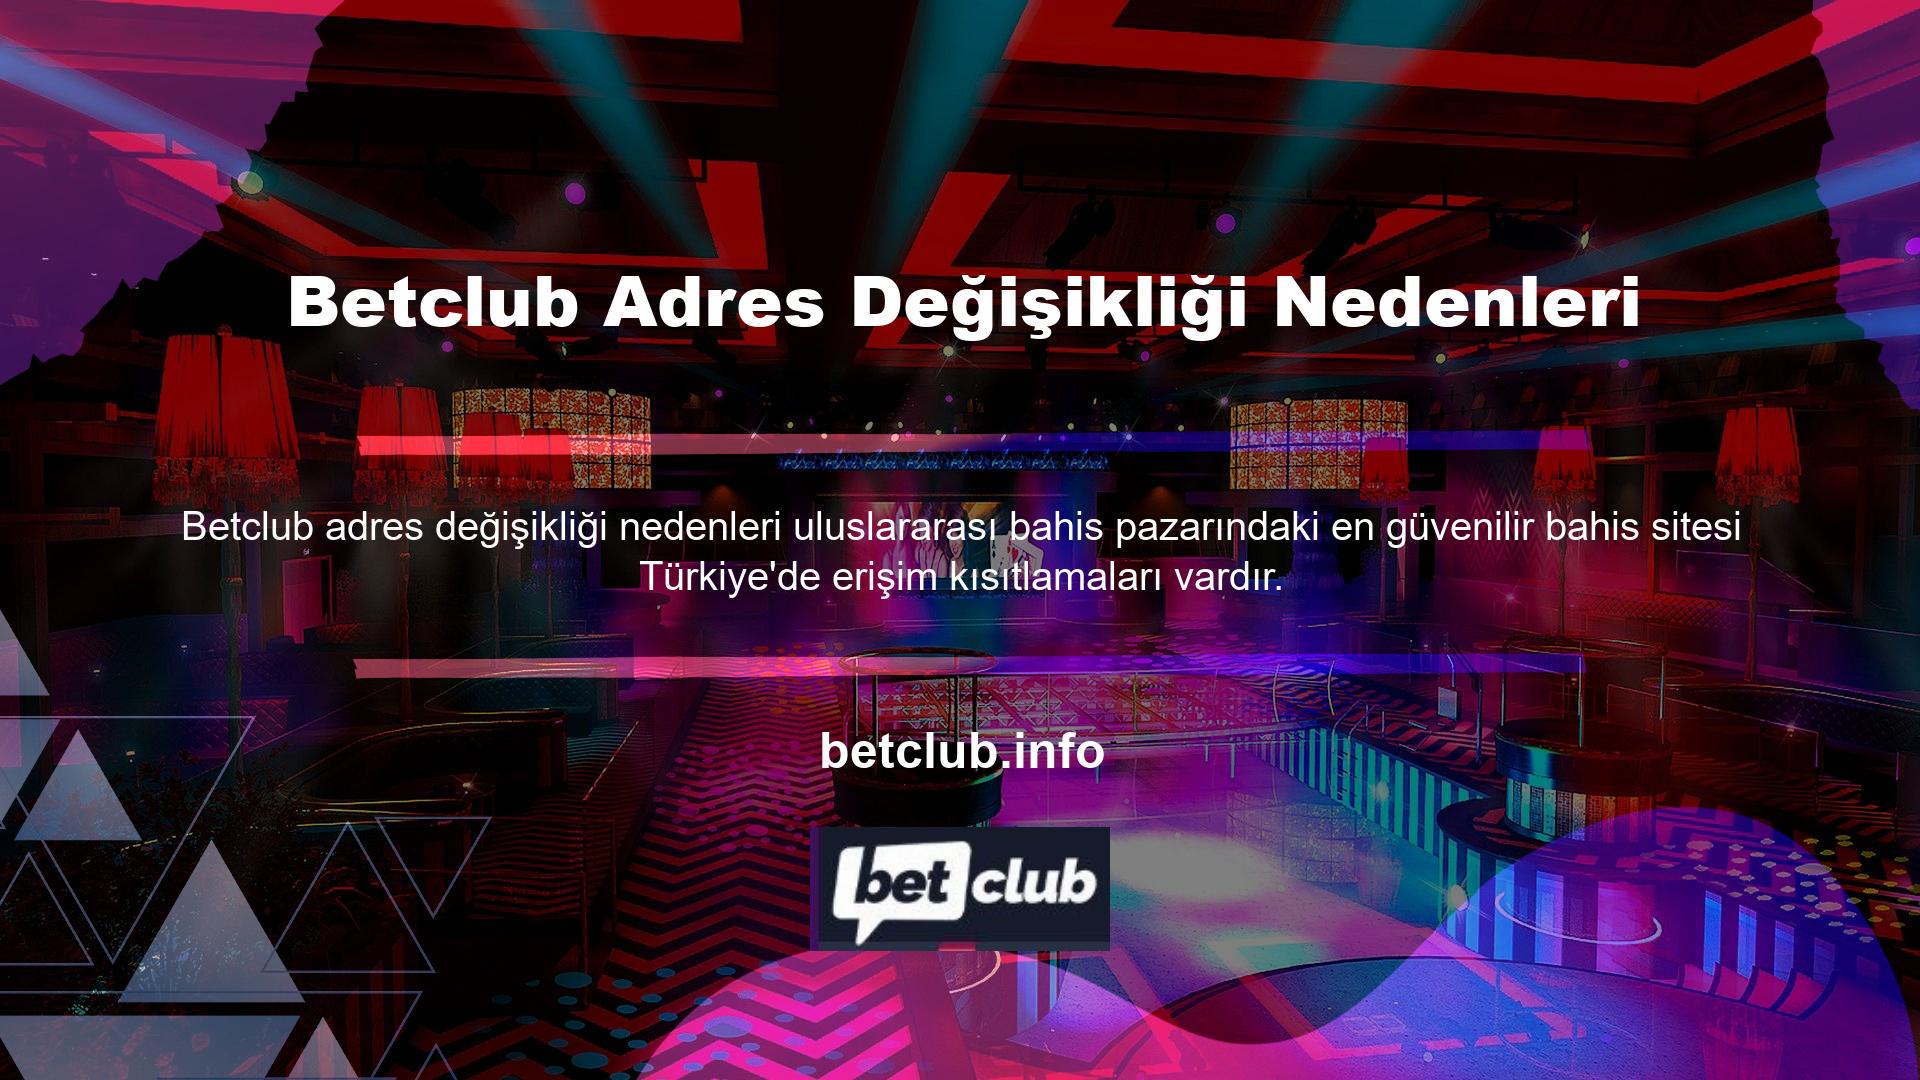 Betclub Adres Değişikliği Nedenleri internet sitesi de bu sitelerden biri olup, bu siteye erişim genellikle engellenmektedir